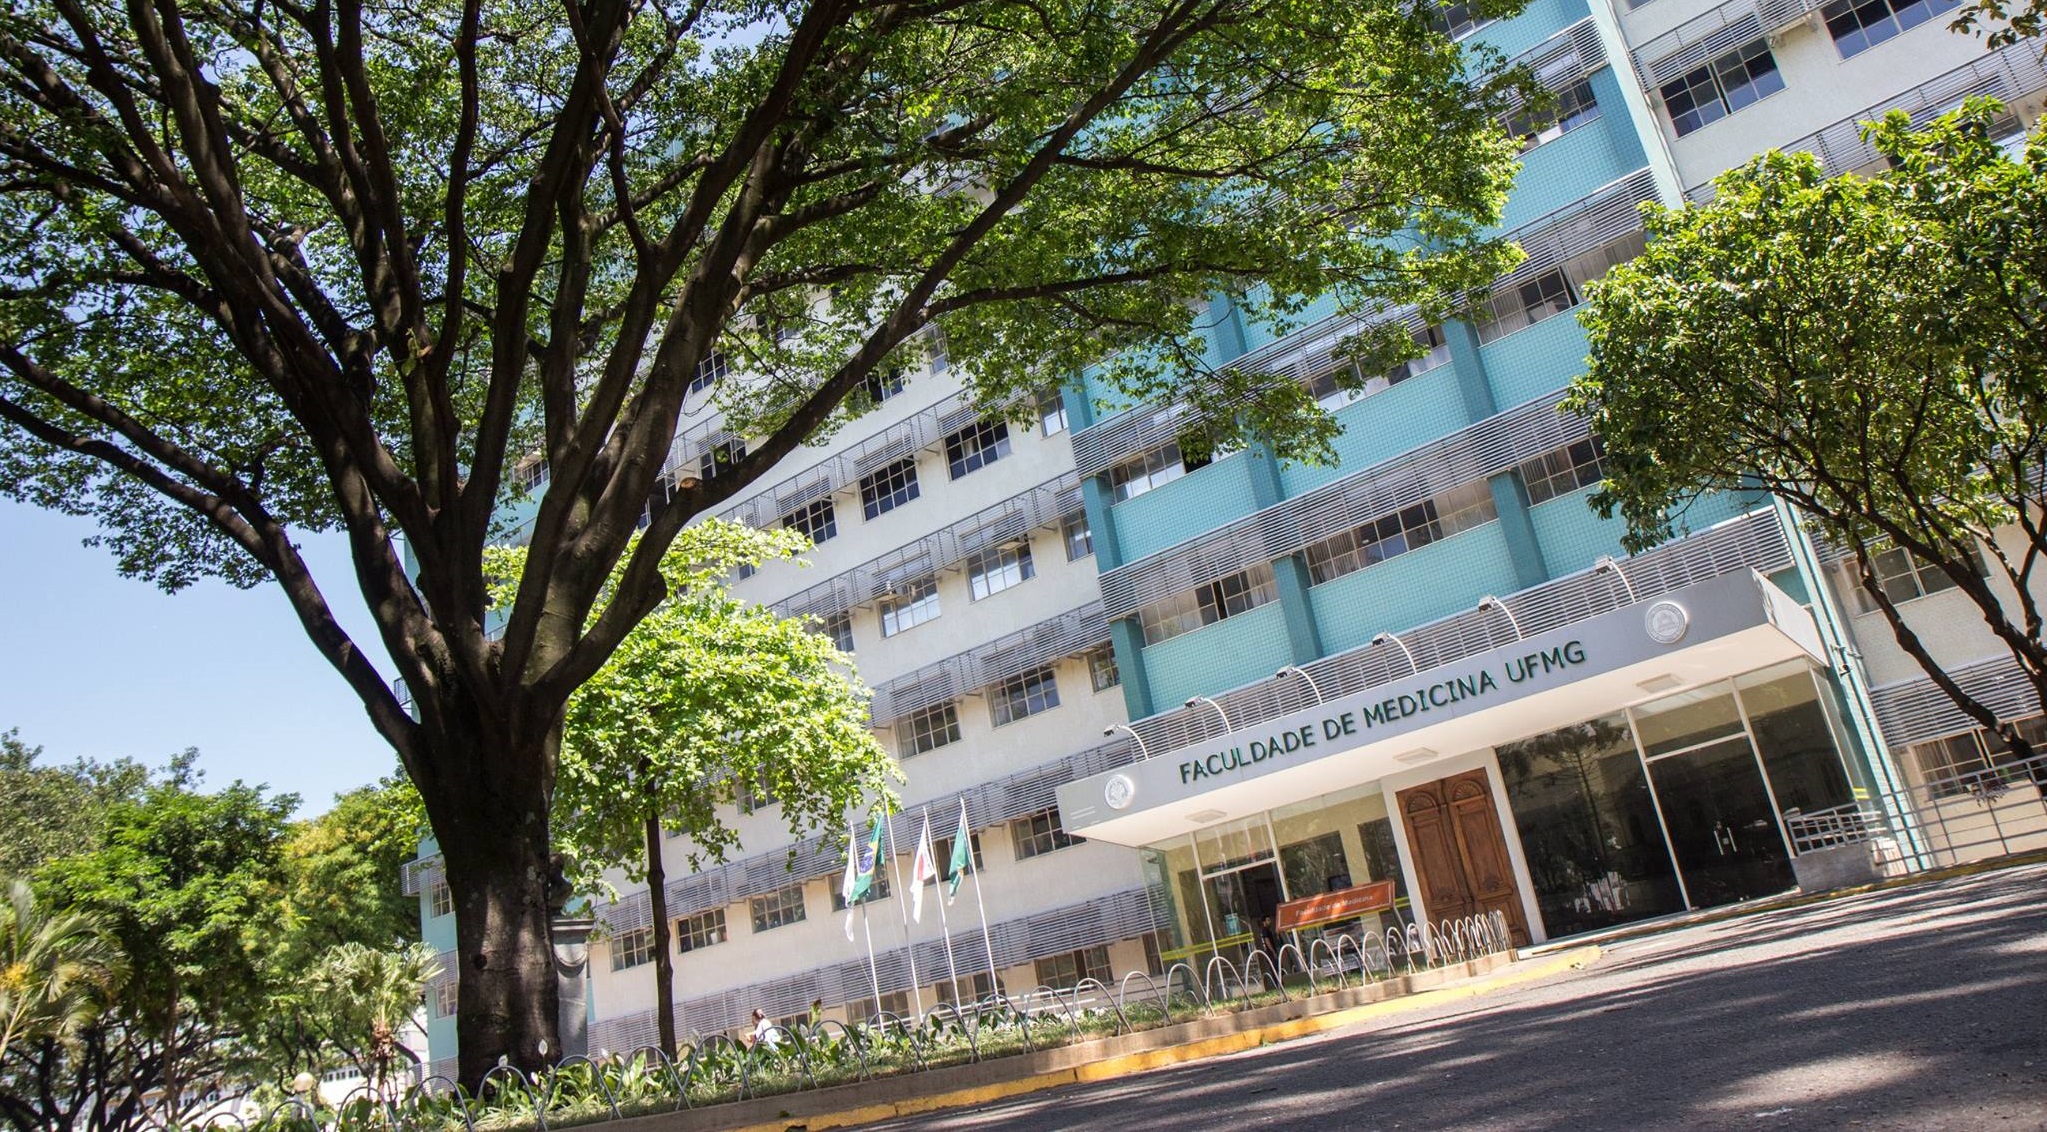 UFMG - Universidade Federal de Minas Gerais - Pós-graduação em Direito abre  inscrições para mestrado e doutorado